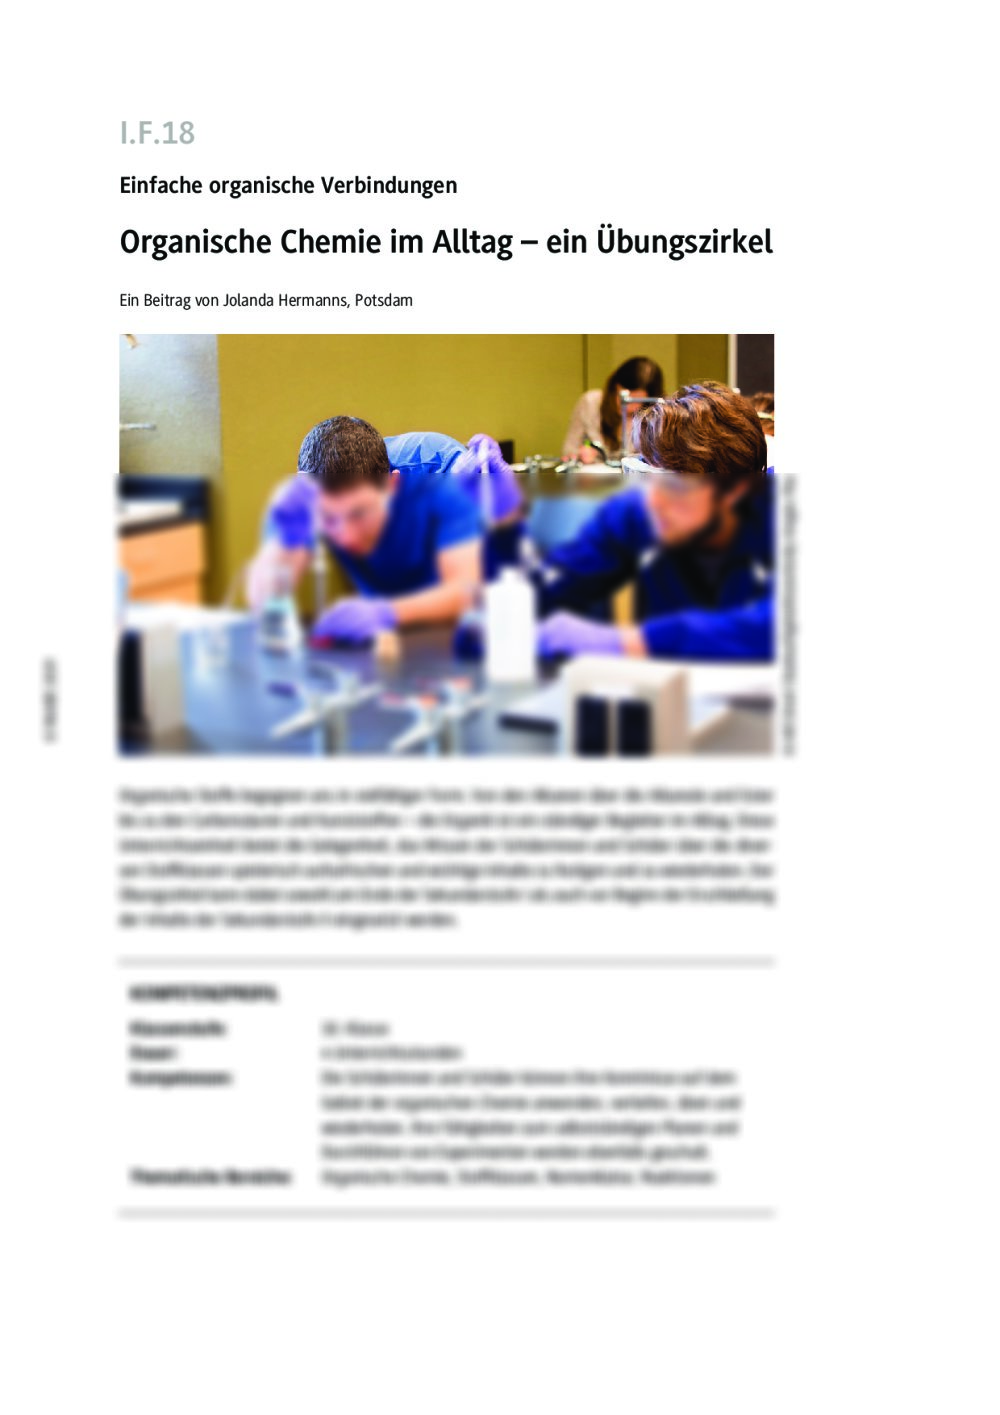 Auffrischen des Wissens über die organische Chemie - Seite 1